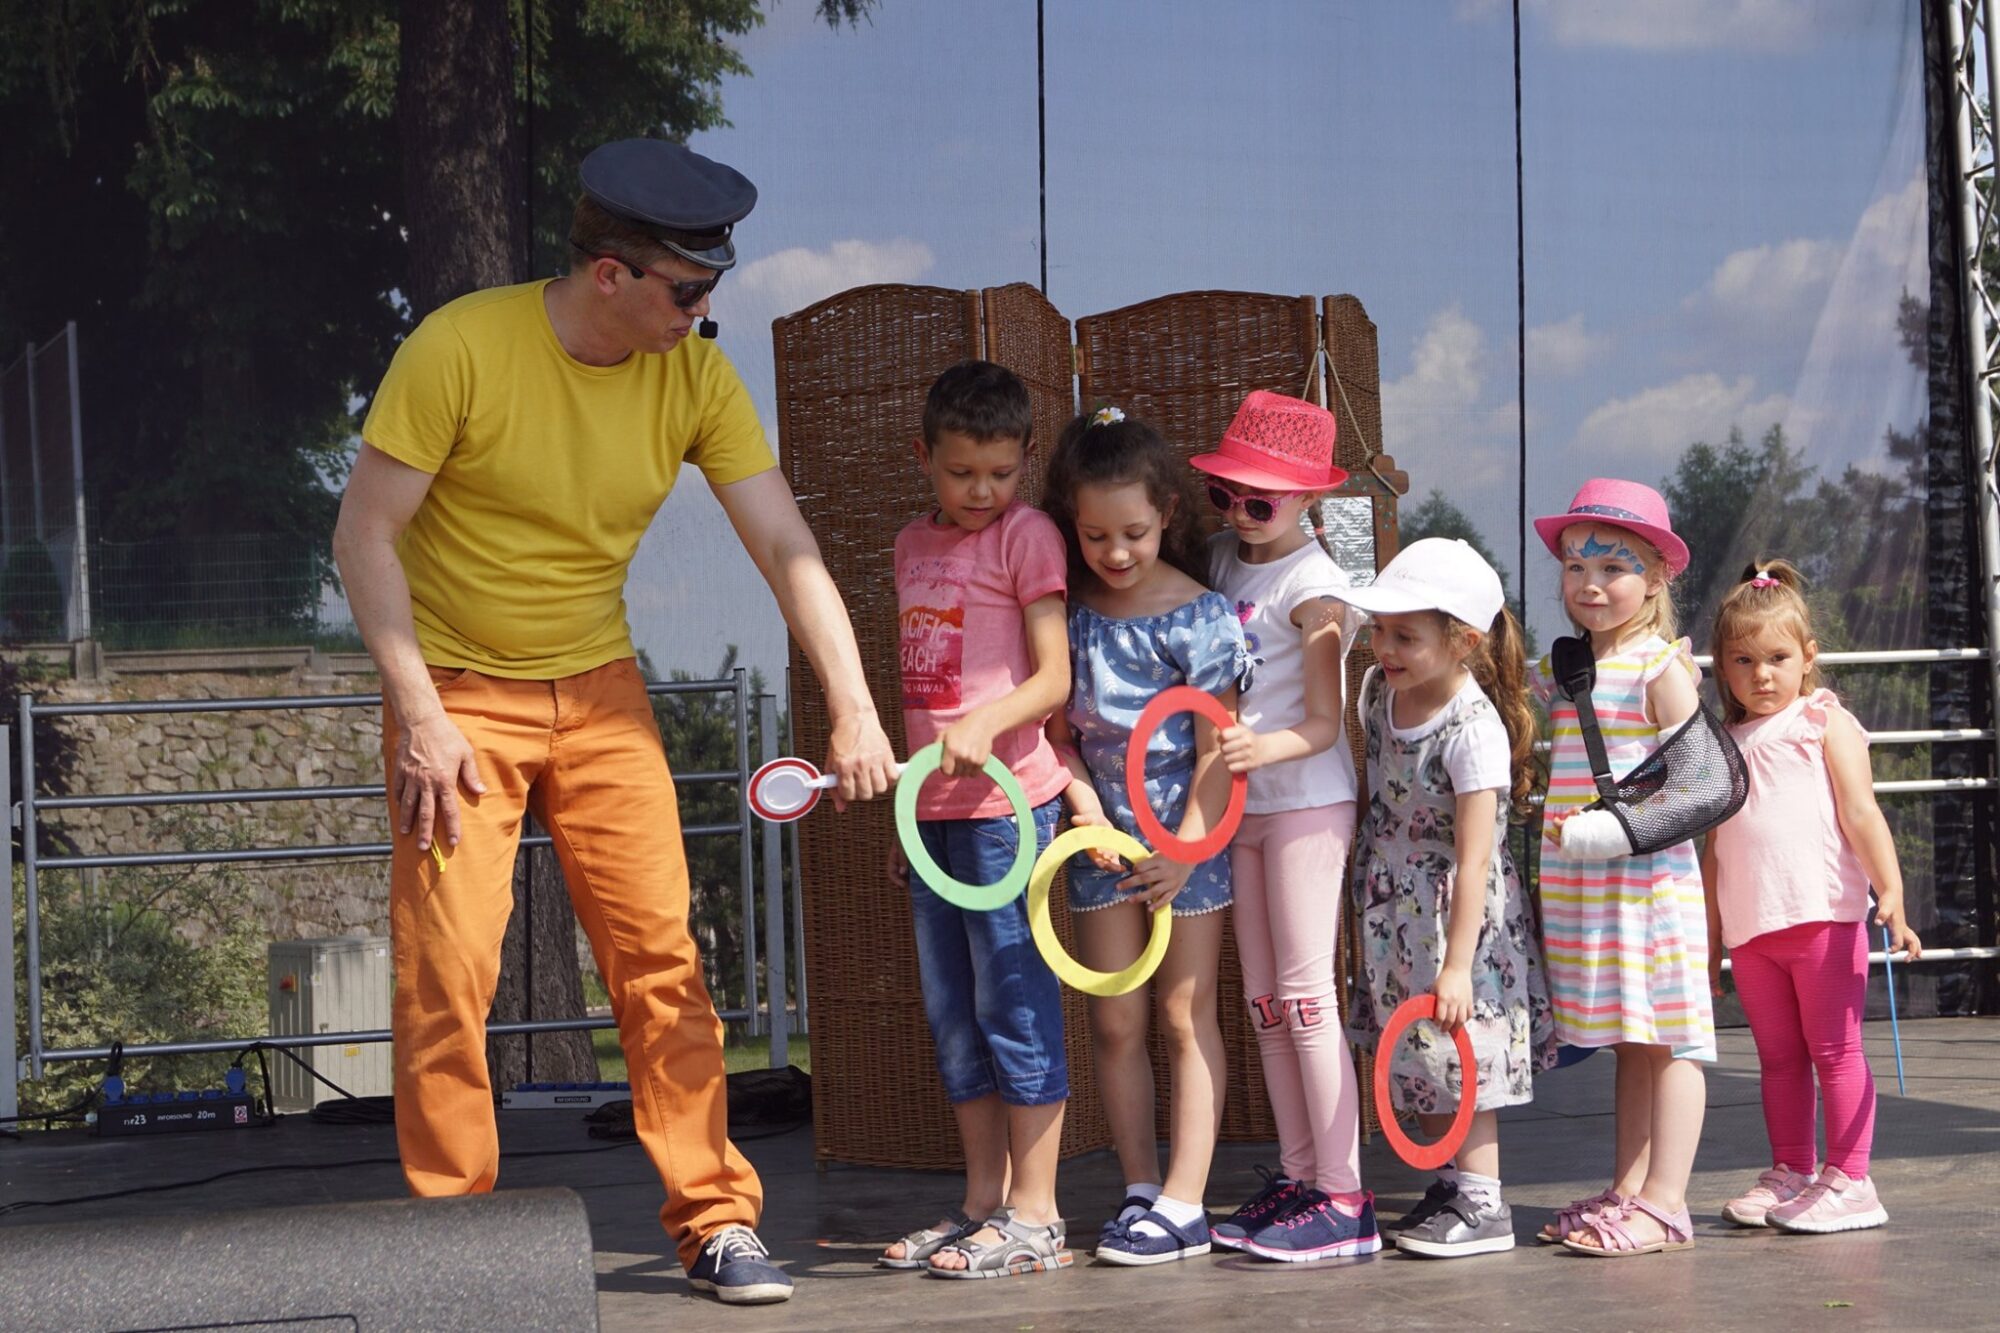 Na zdjęciu ubrany w kolorowy strój aktor bawi się z dziećmi, trzymającymi w rękach kolorowe kółka